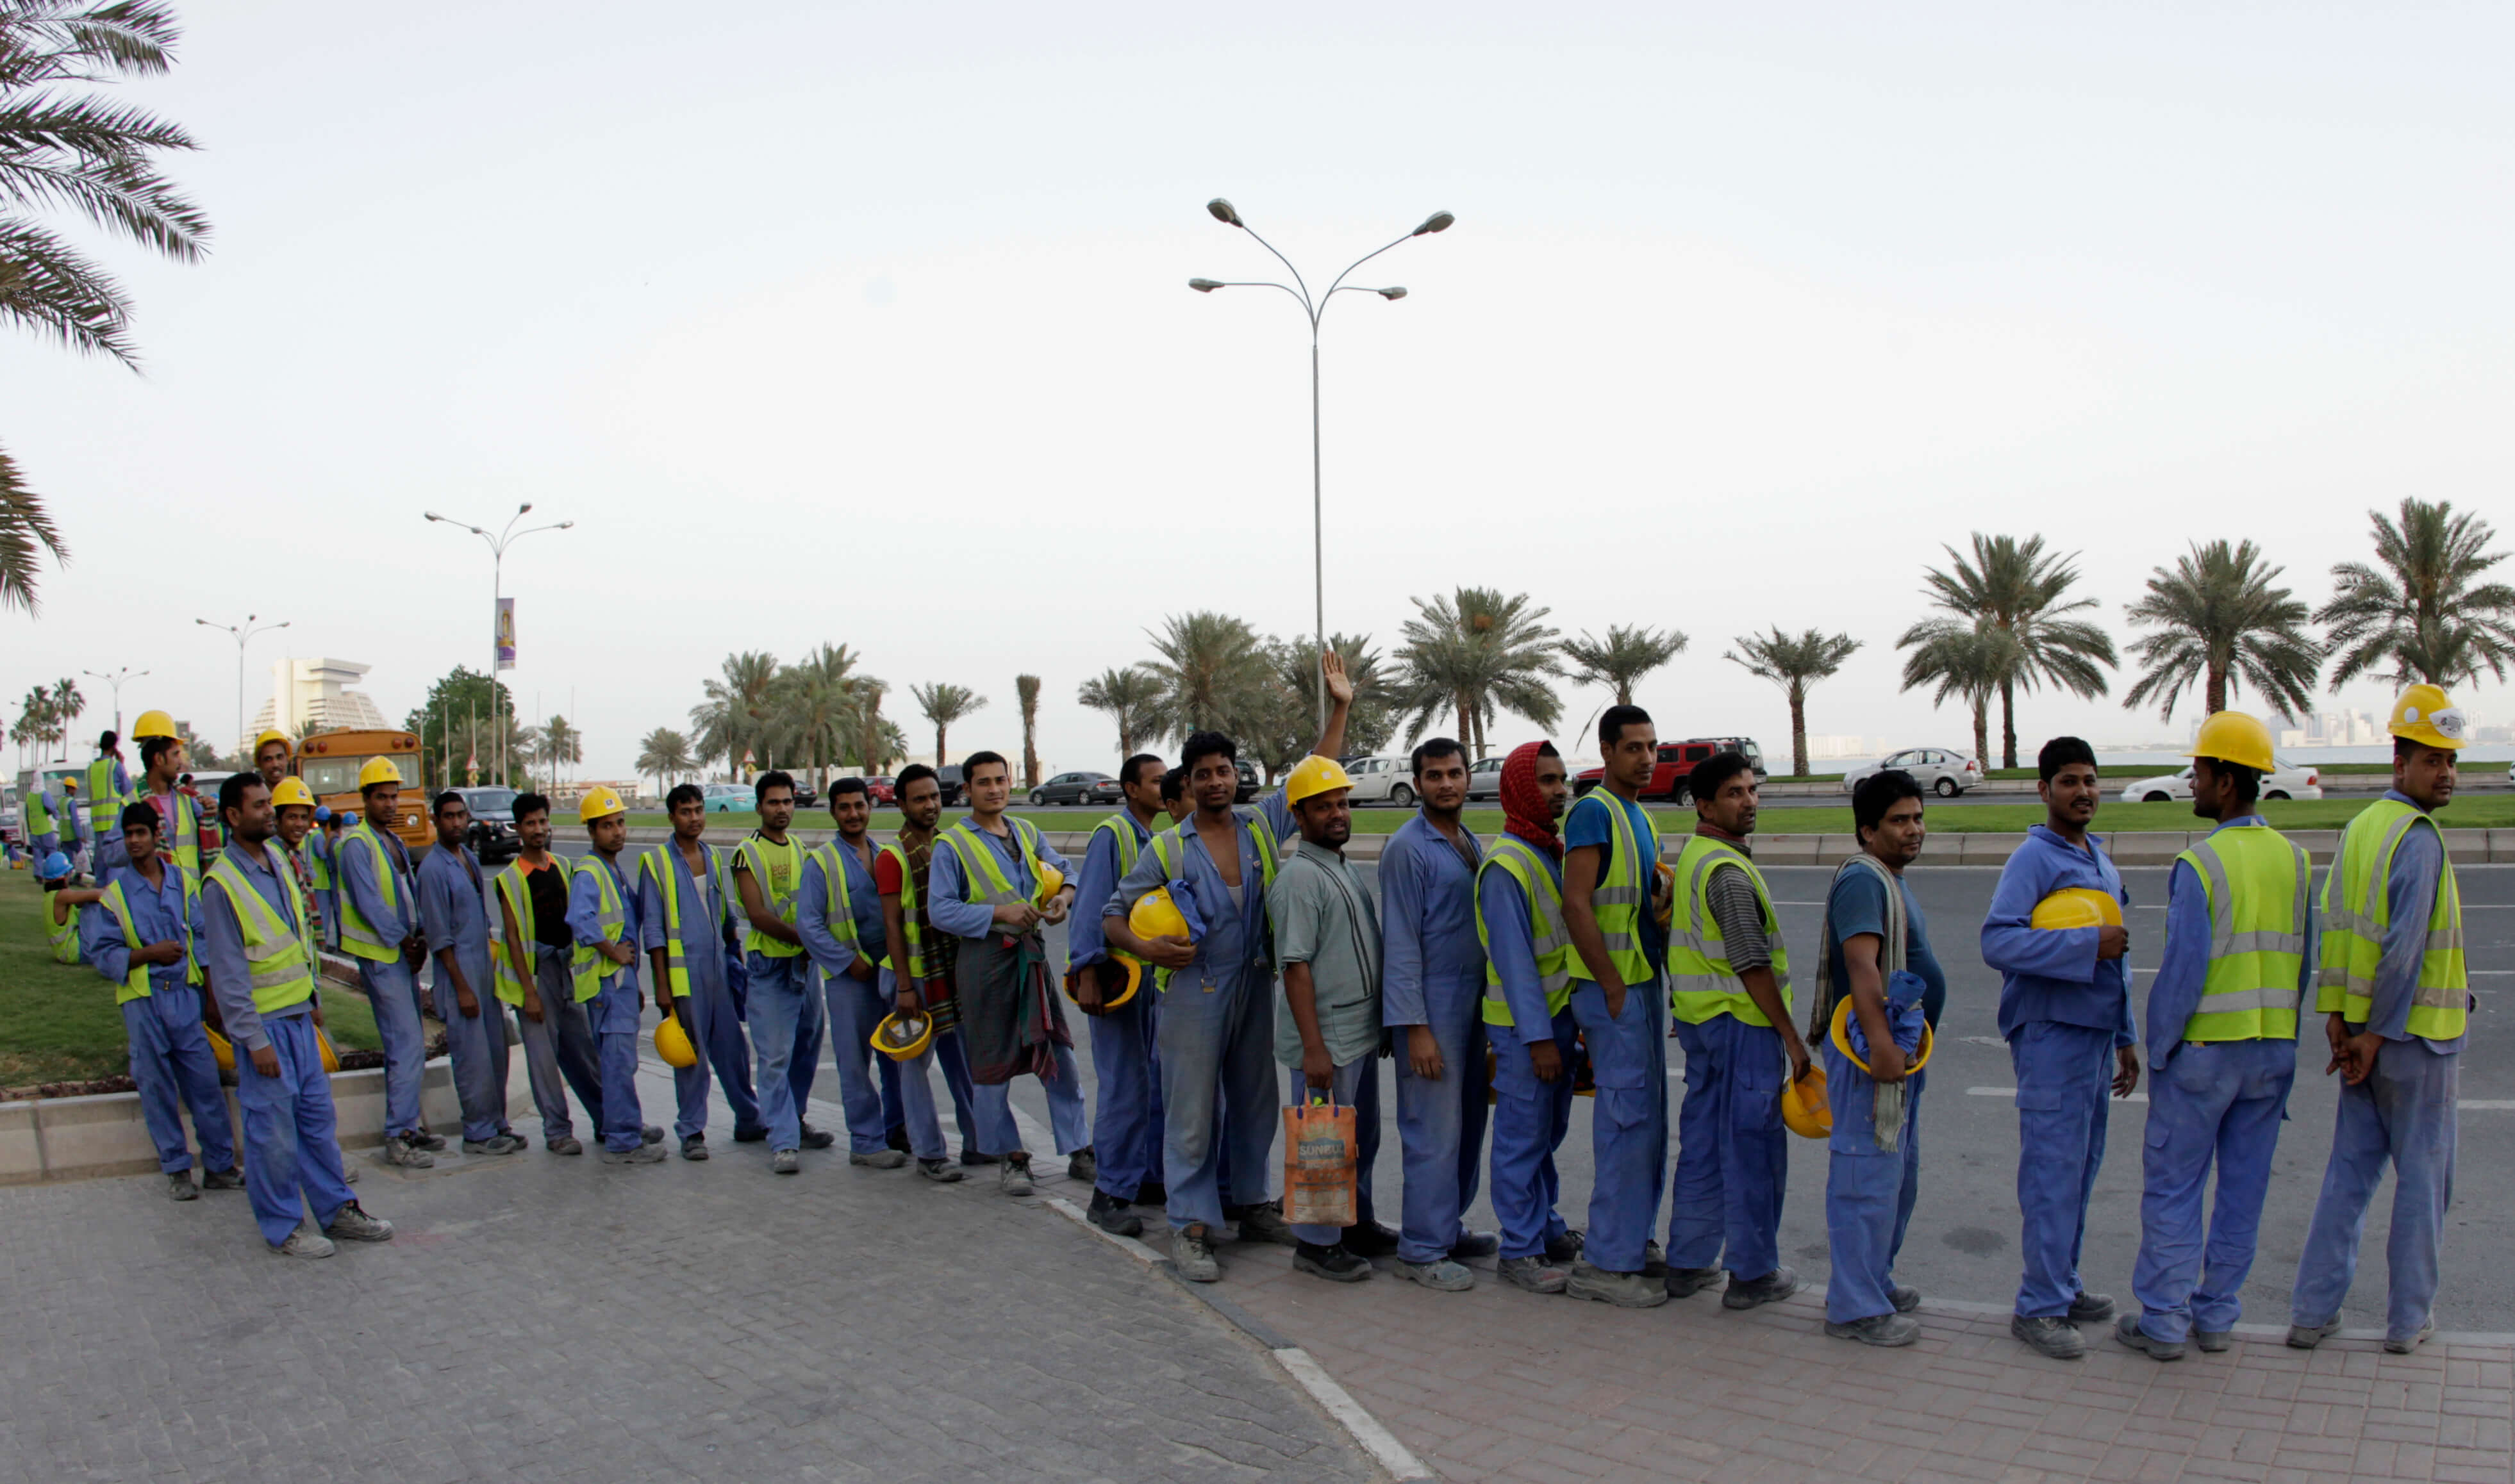 Reef - Buitenlandse bouwvakkers bij een bushalte in Doka, Qatar, in 2012. Reuters